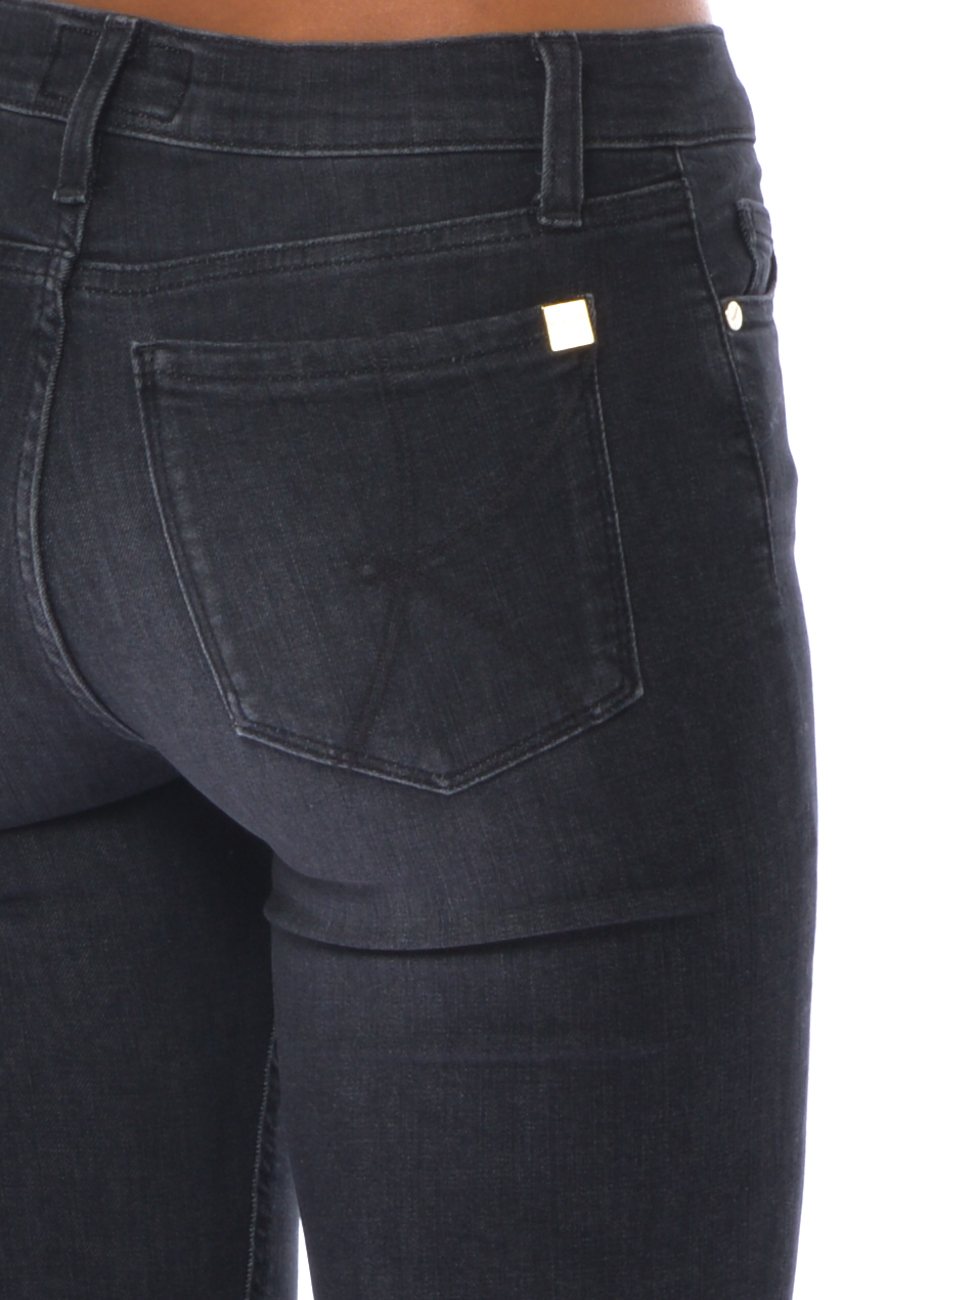 Jeans da OI6BL002 stone washed tasche cinque - donna Kaos